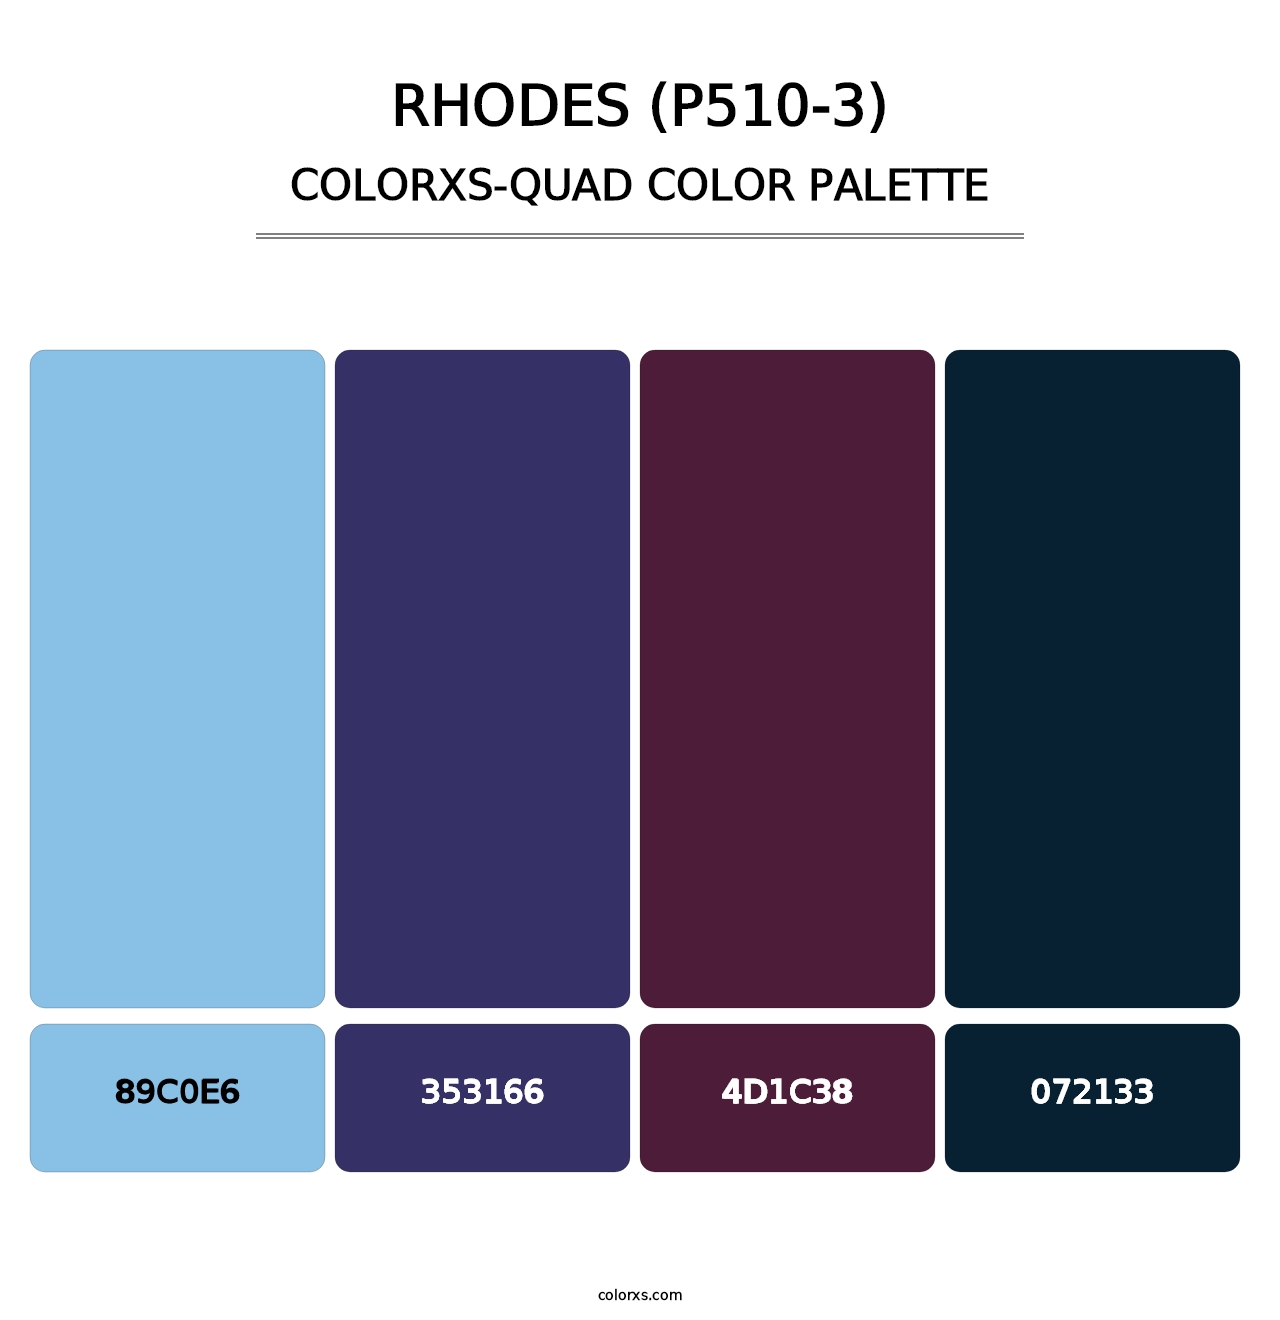 Rhodes (P510-3) - Colorxs Quad Palette